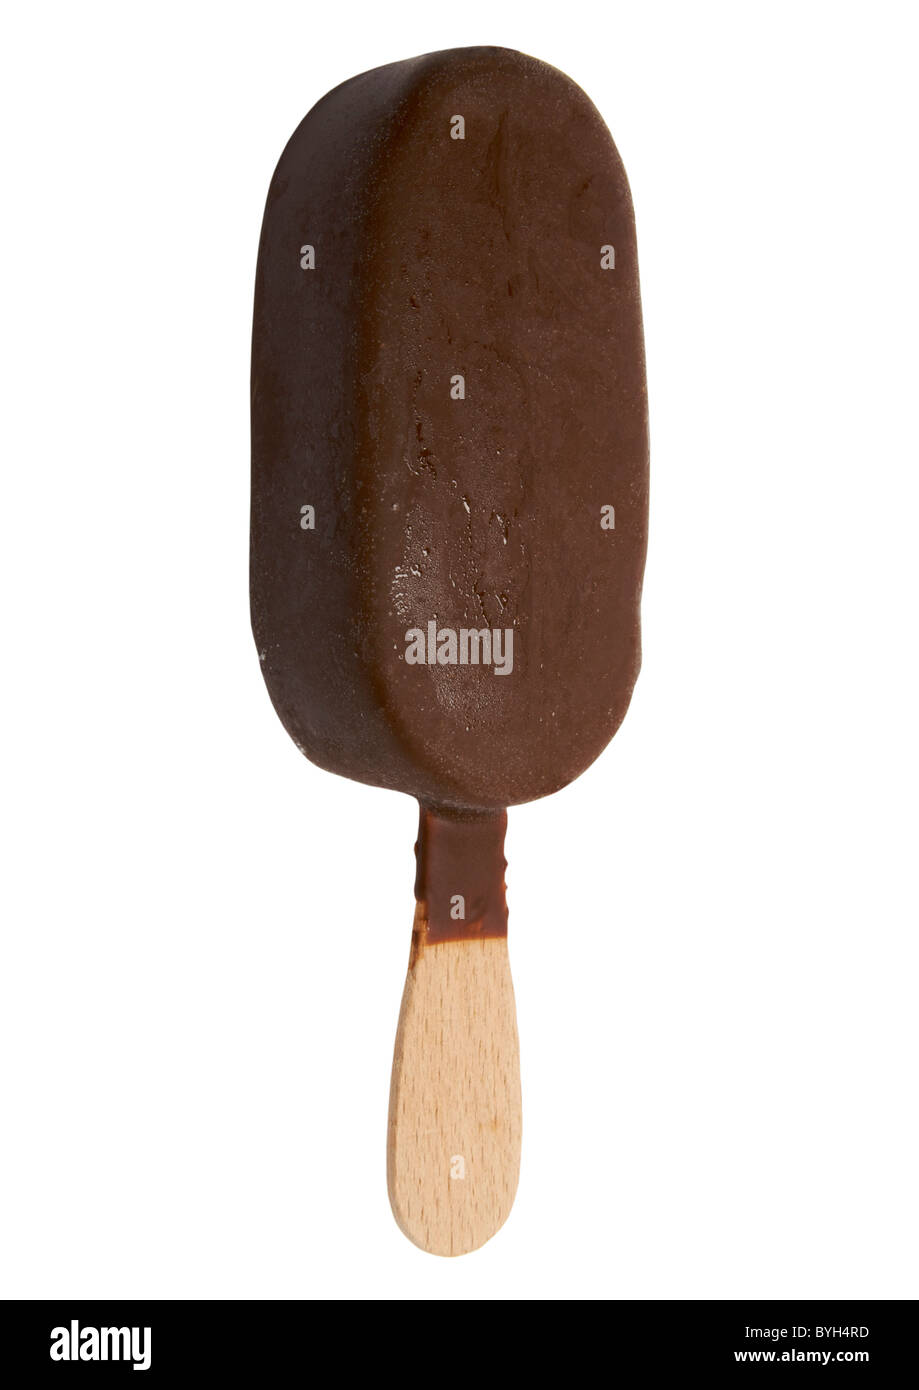 Schokolade Eis am Stiel auf weißem Hintergrund Stockfoto